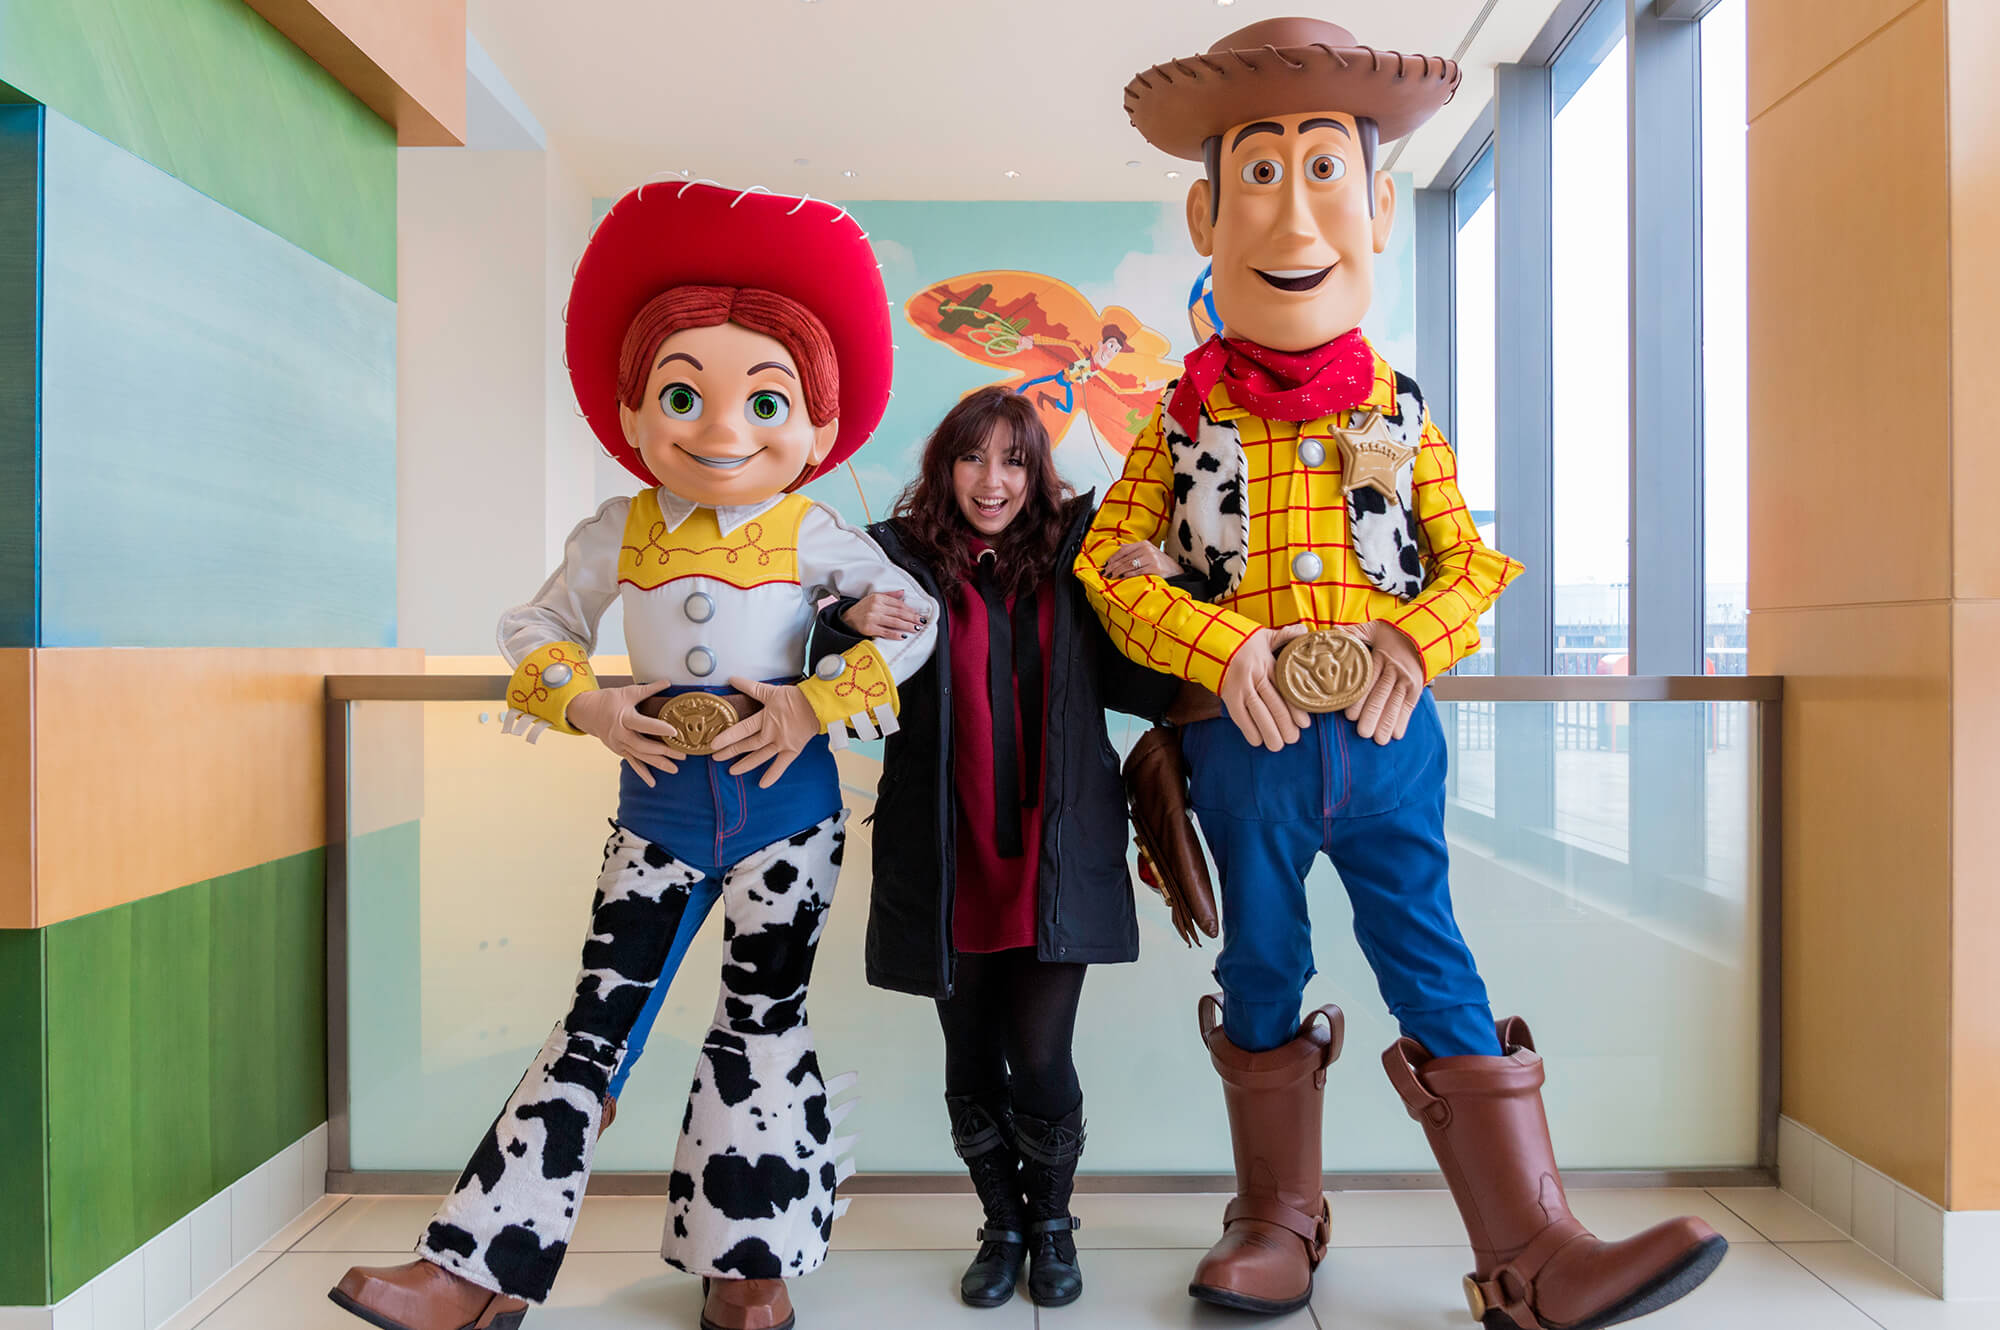 Inside Shanghai Disneyland’s Toy Story Hotel